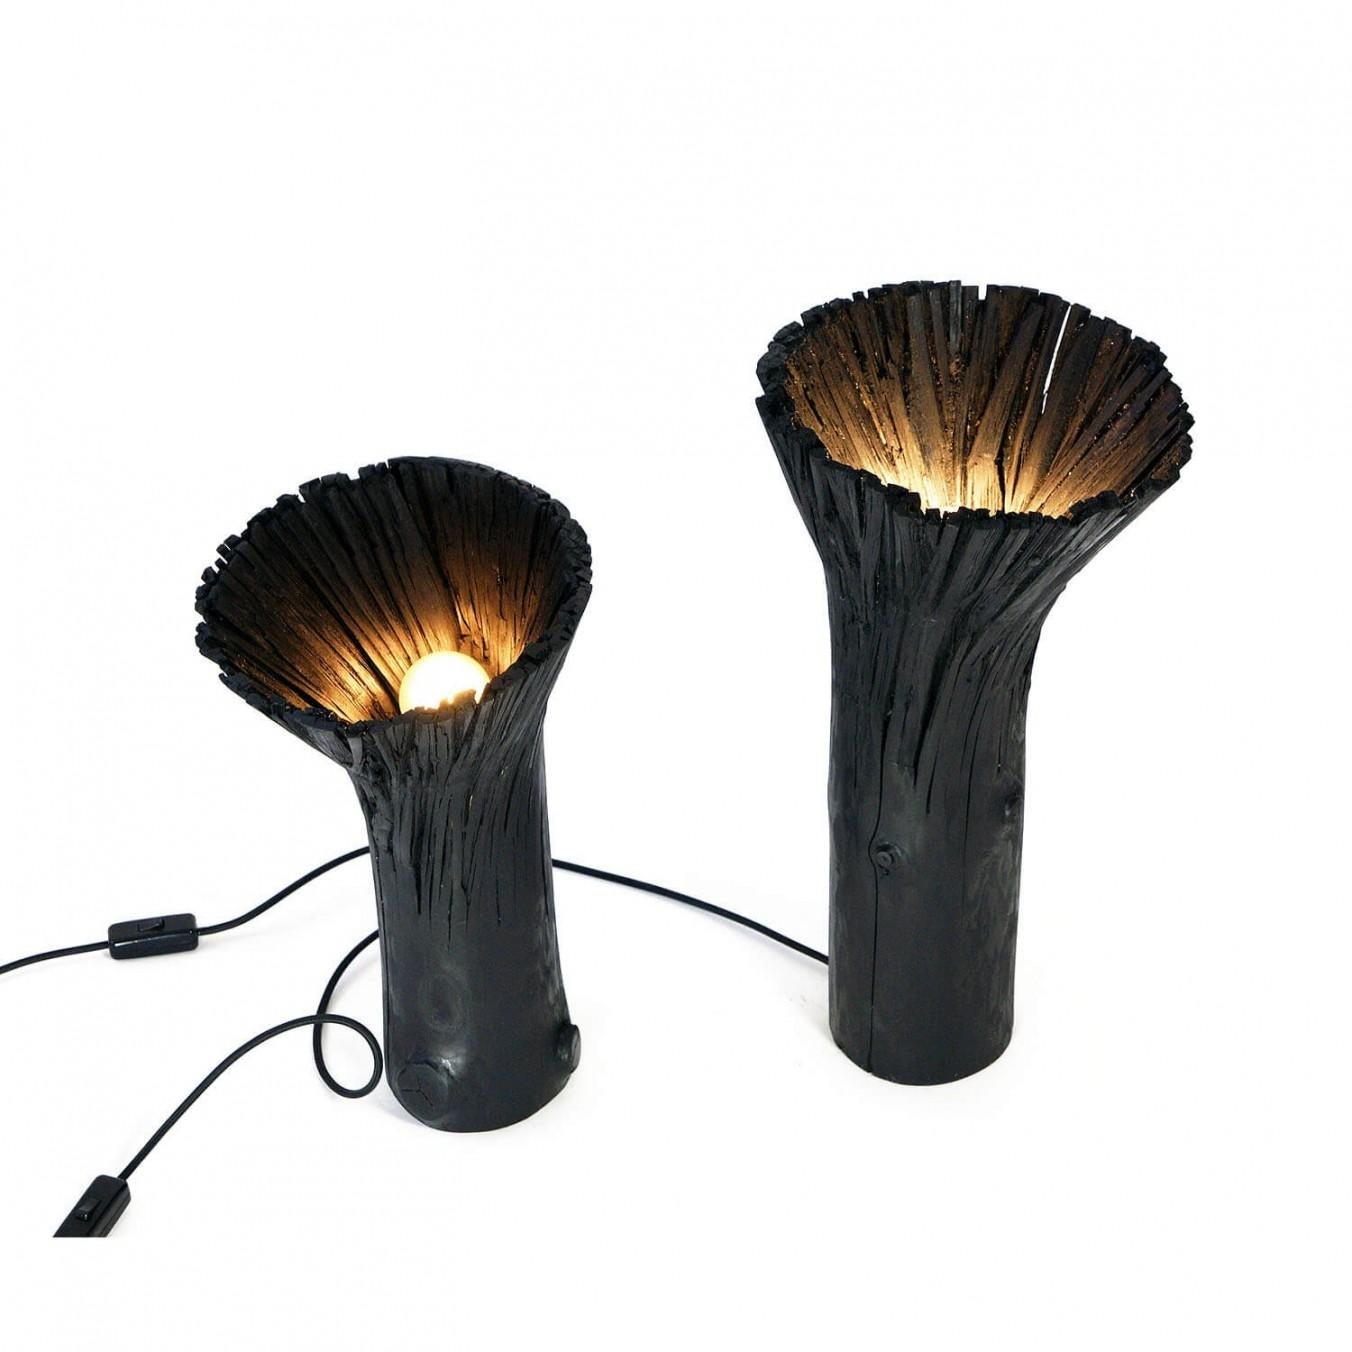 Lampe de table noire contemporaine - lampe en bois pressé de Johannes Hemann

Matériau : bois
Source de lumière : ampoule E14, max 50 Watt
Dimensions : ø35 x H478 cm

La série 